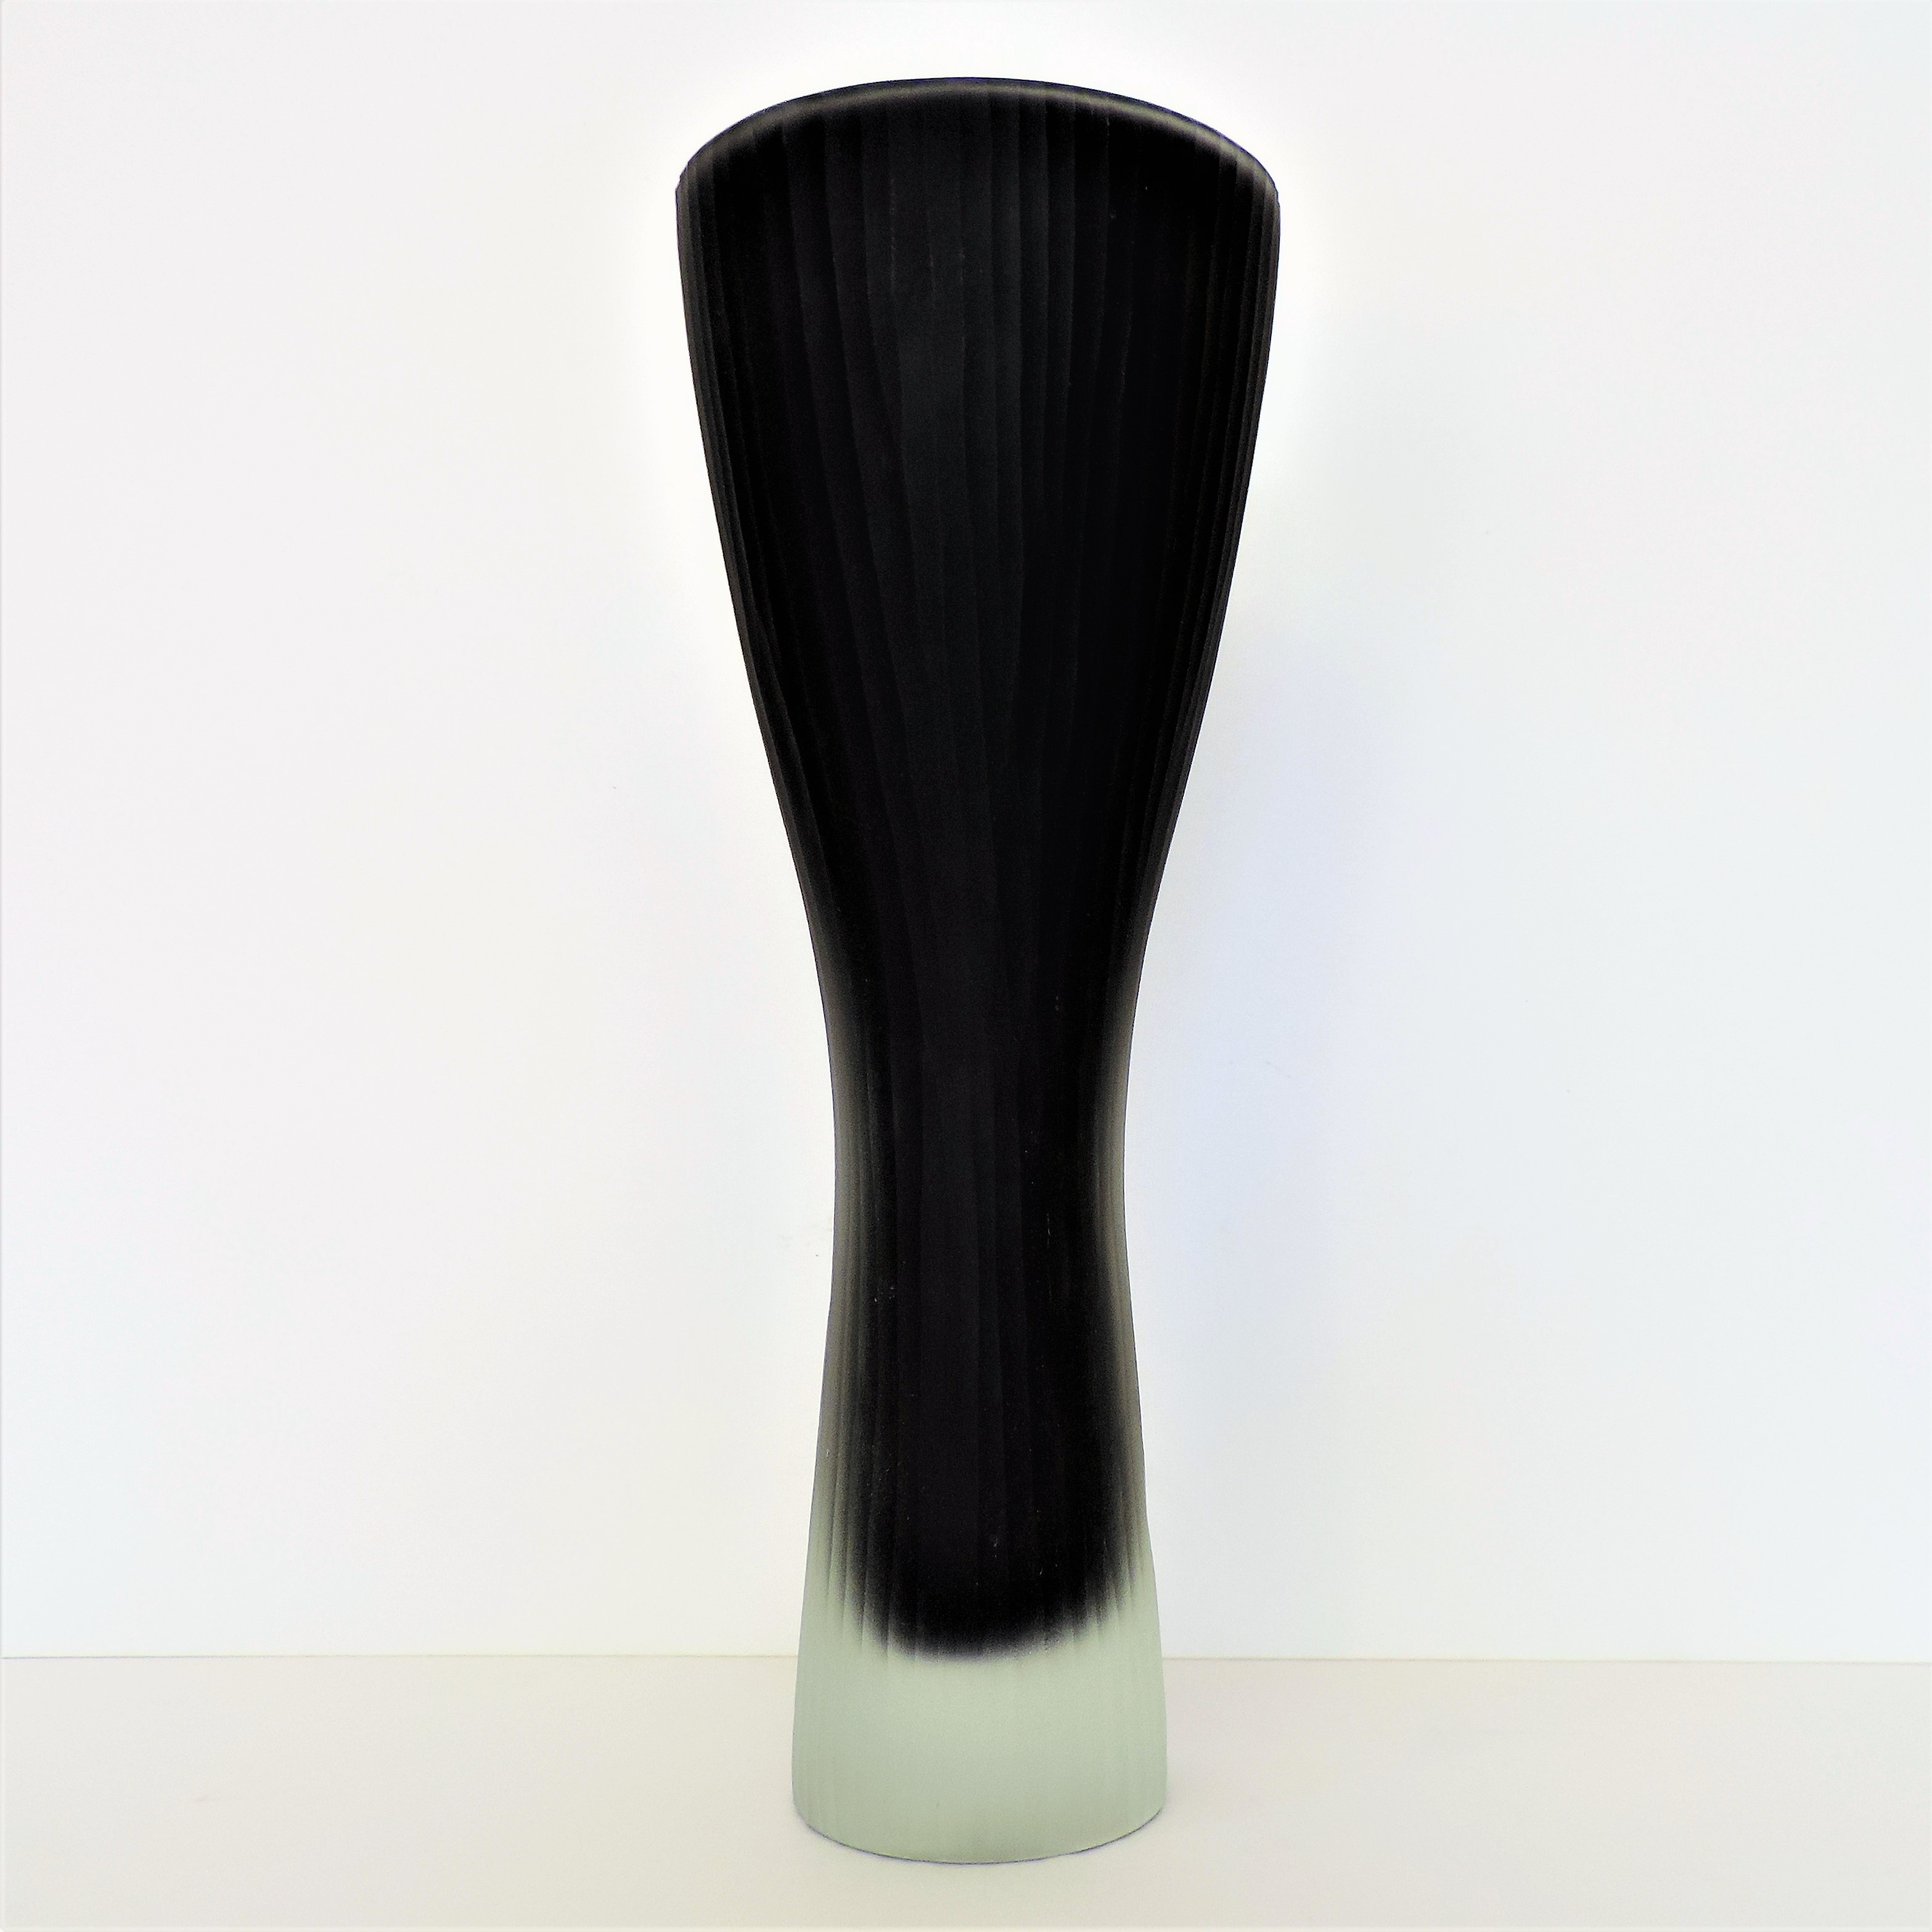 Black Sommerso Art Glass Trumpet Vase 32cm High. A studio art glass vase in sommerso black to